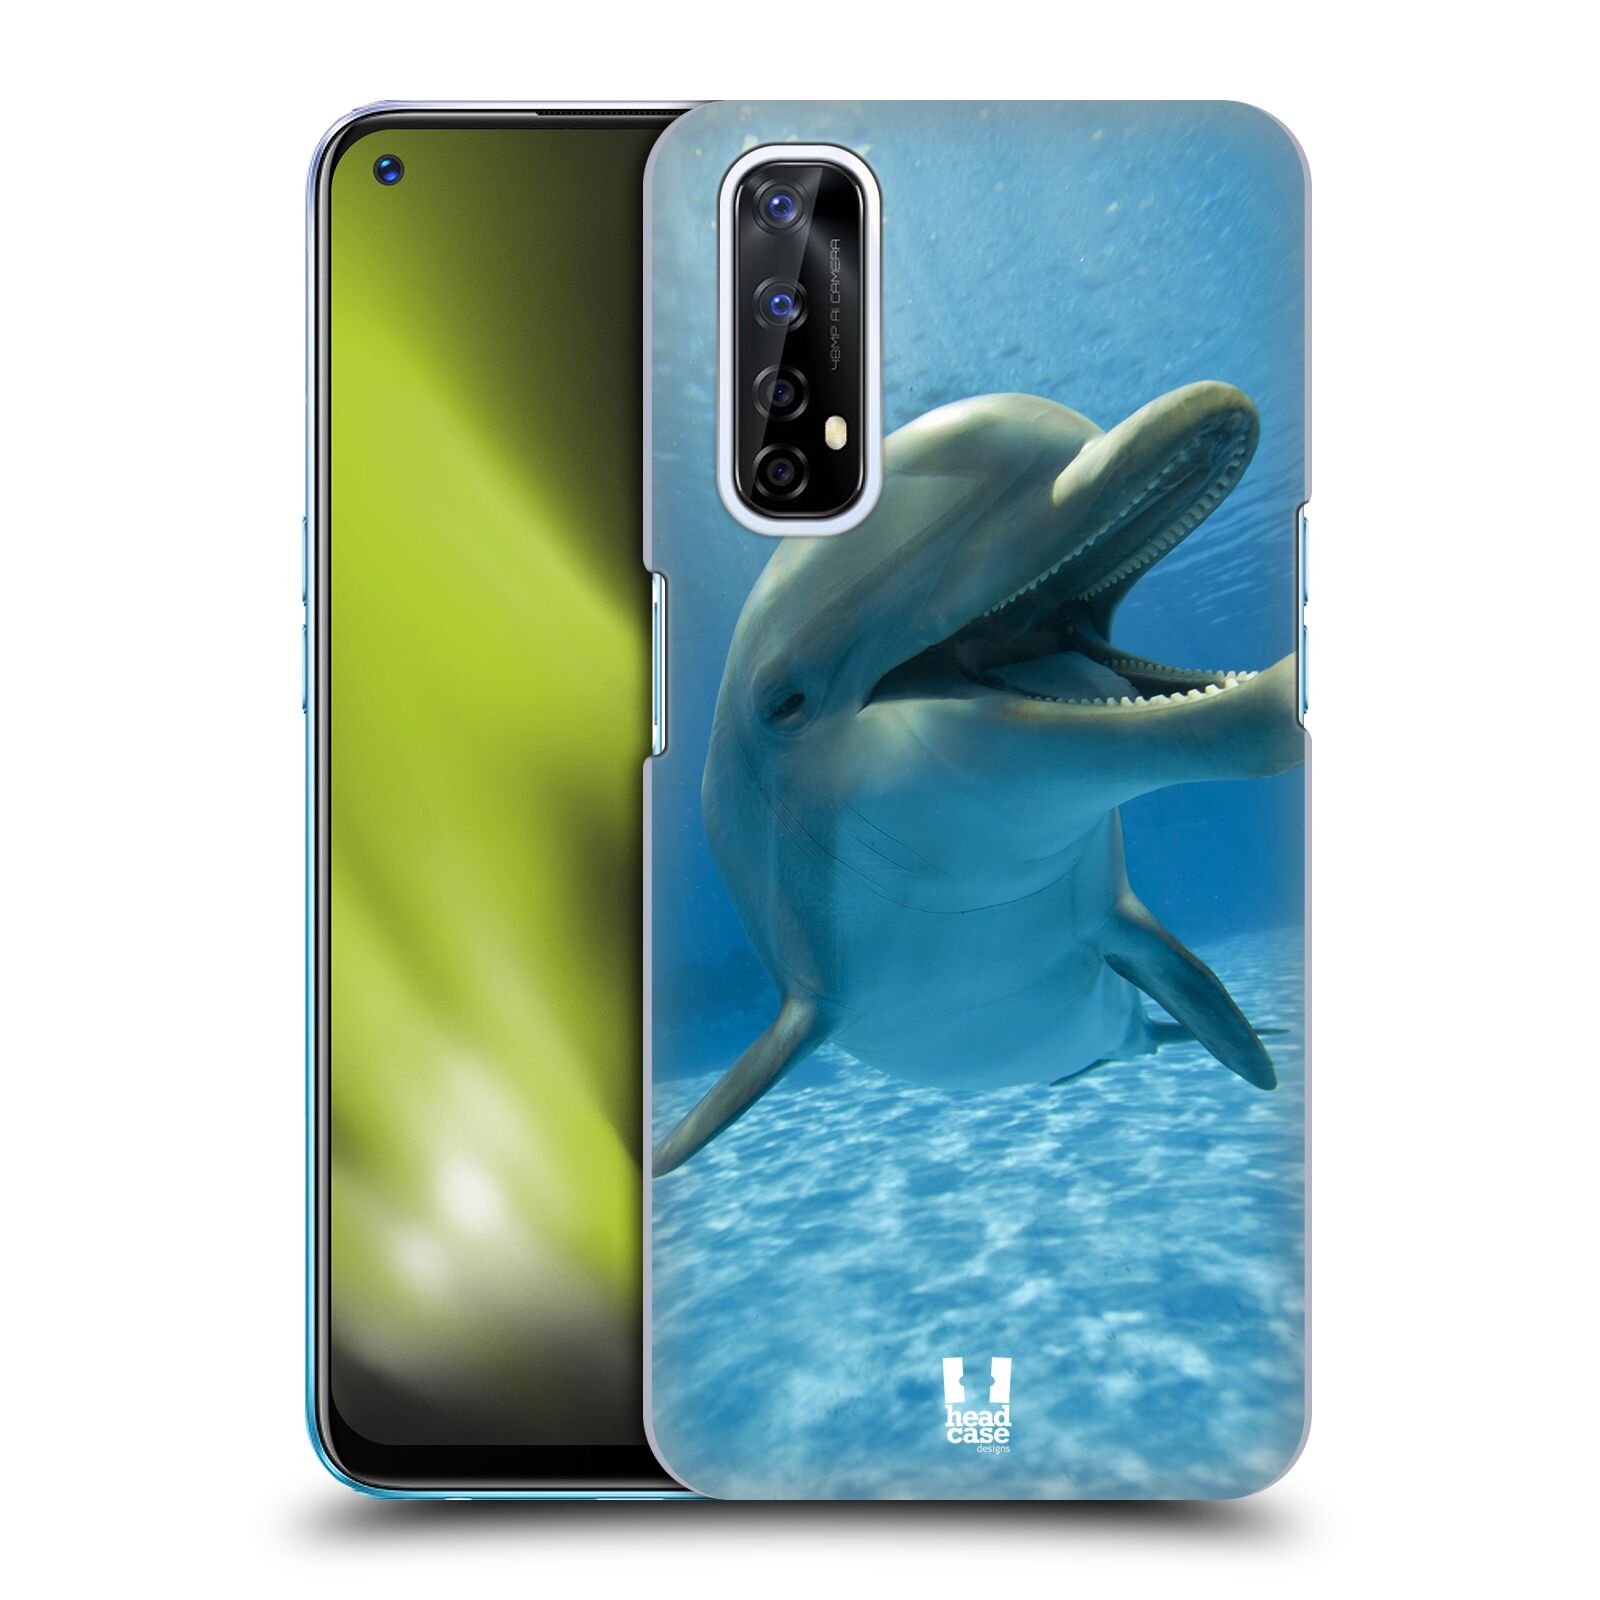 Zadní obal pro mobil Realme 7 - HEAD CASE - Svět zvířat delfín v moři